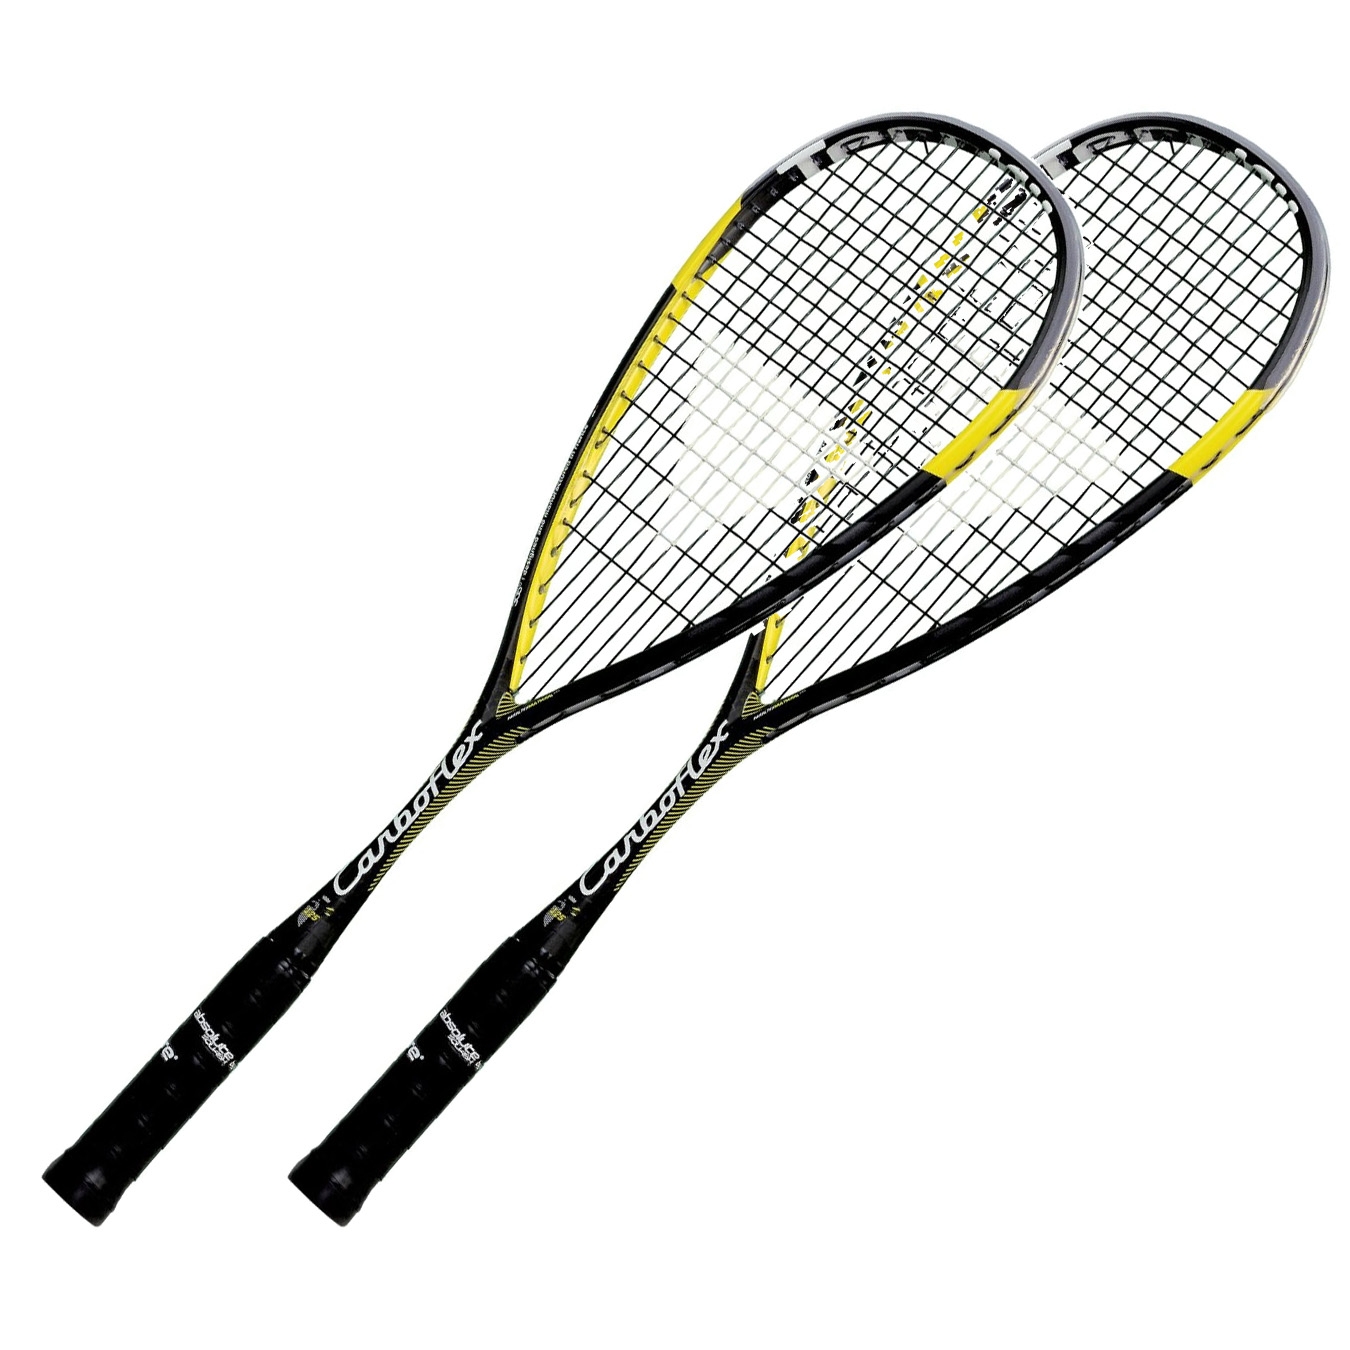 Tecnifibre Carboflex 125 Heritage Squash Racket Guaranteed Original and New 